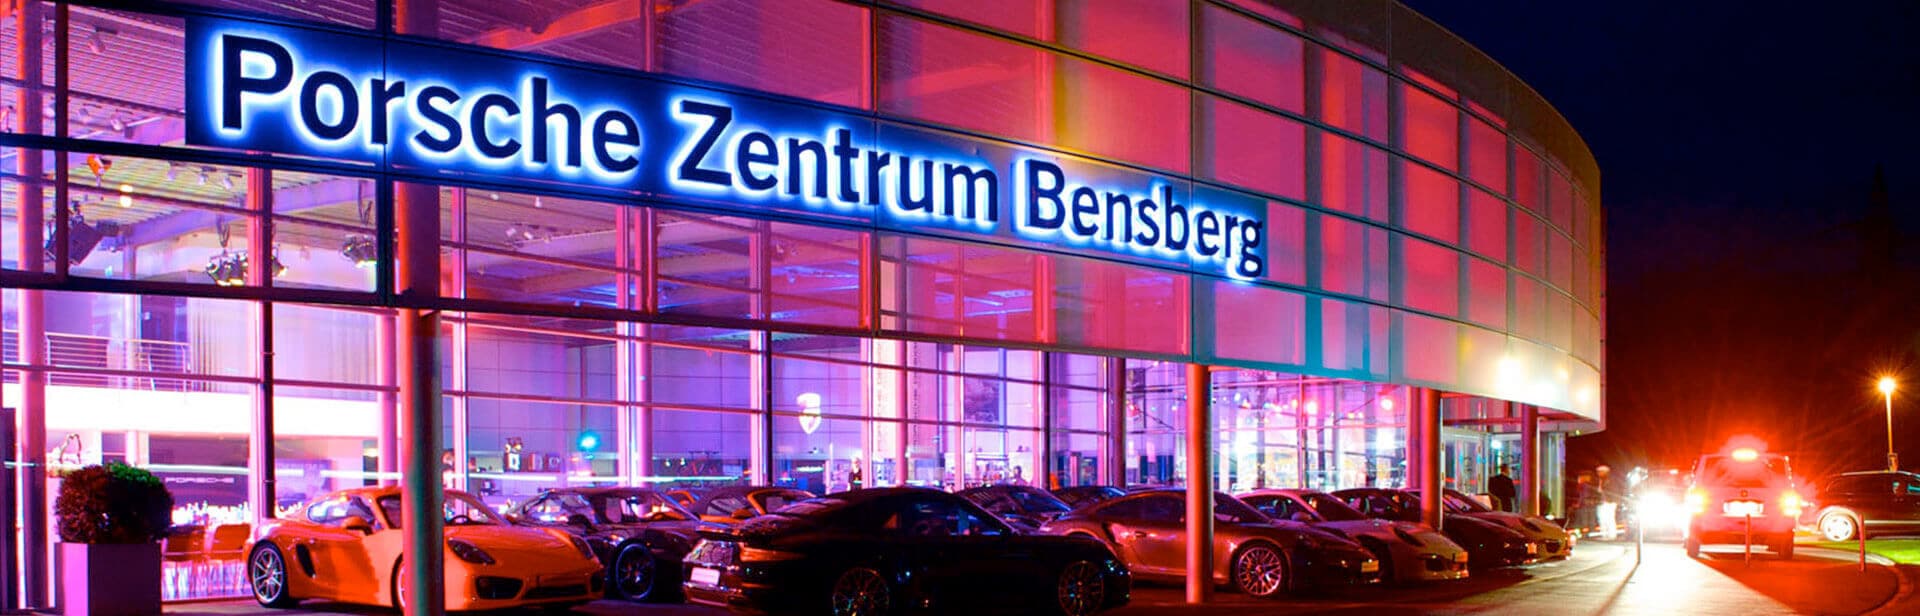 Standort Porsche Zentrum Bensberg